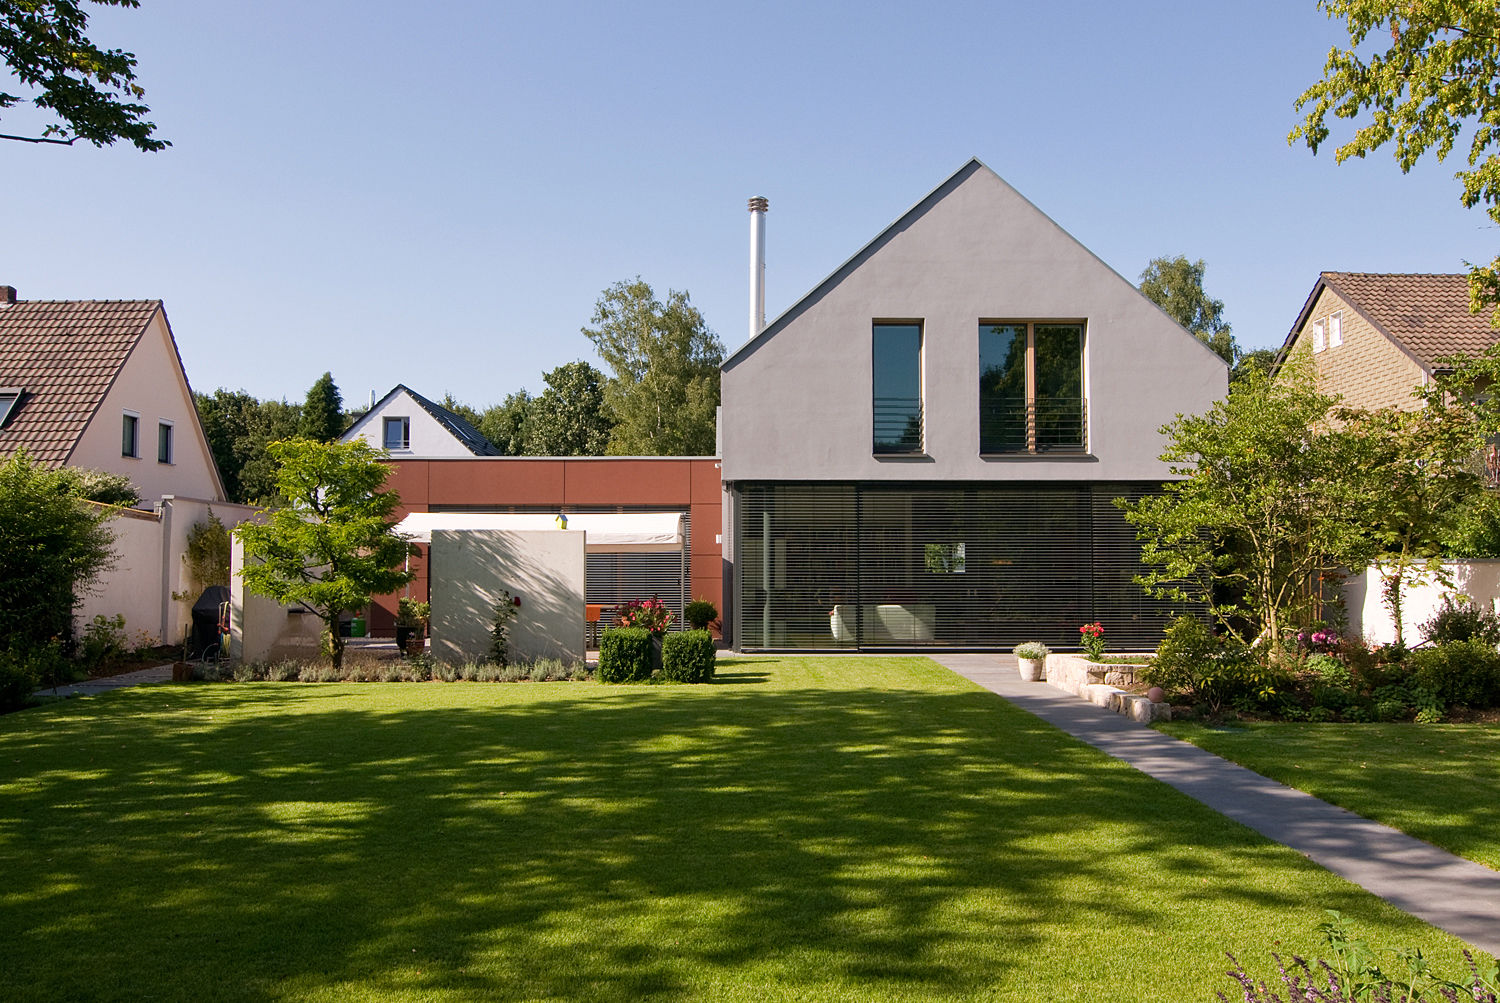 Modernes Wohnhaus mit Satteldach in Köln, wirges-klein architekten wirges-klein architekten Modern houses